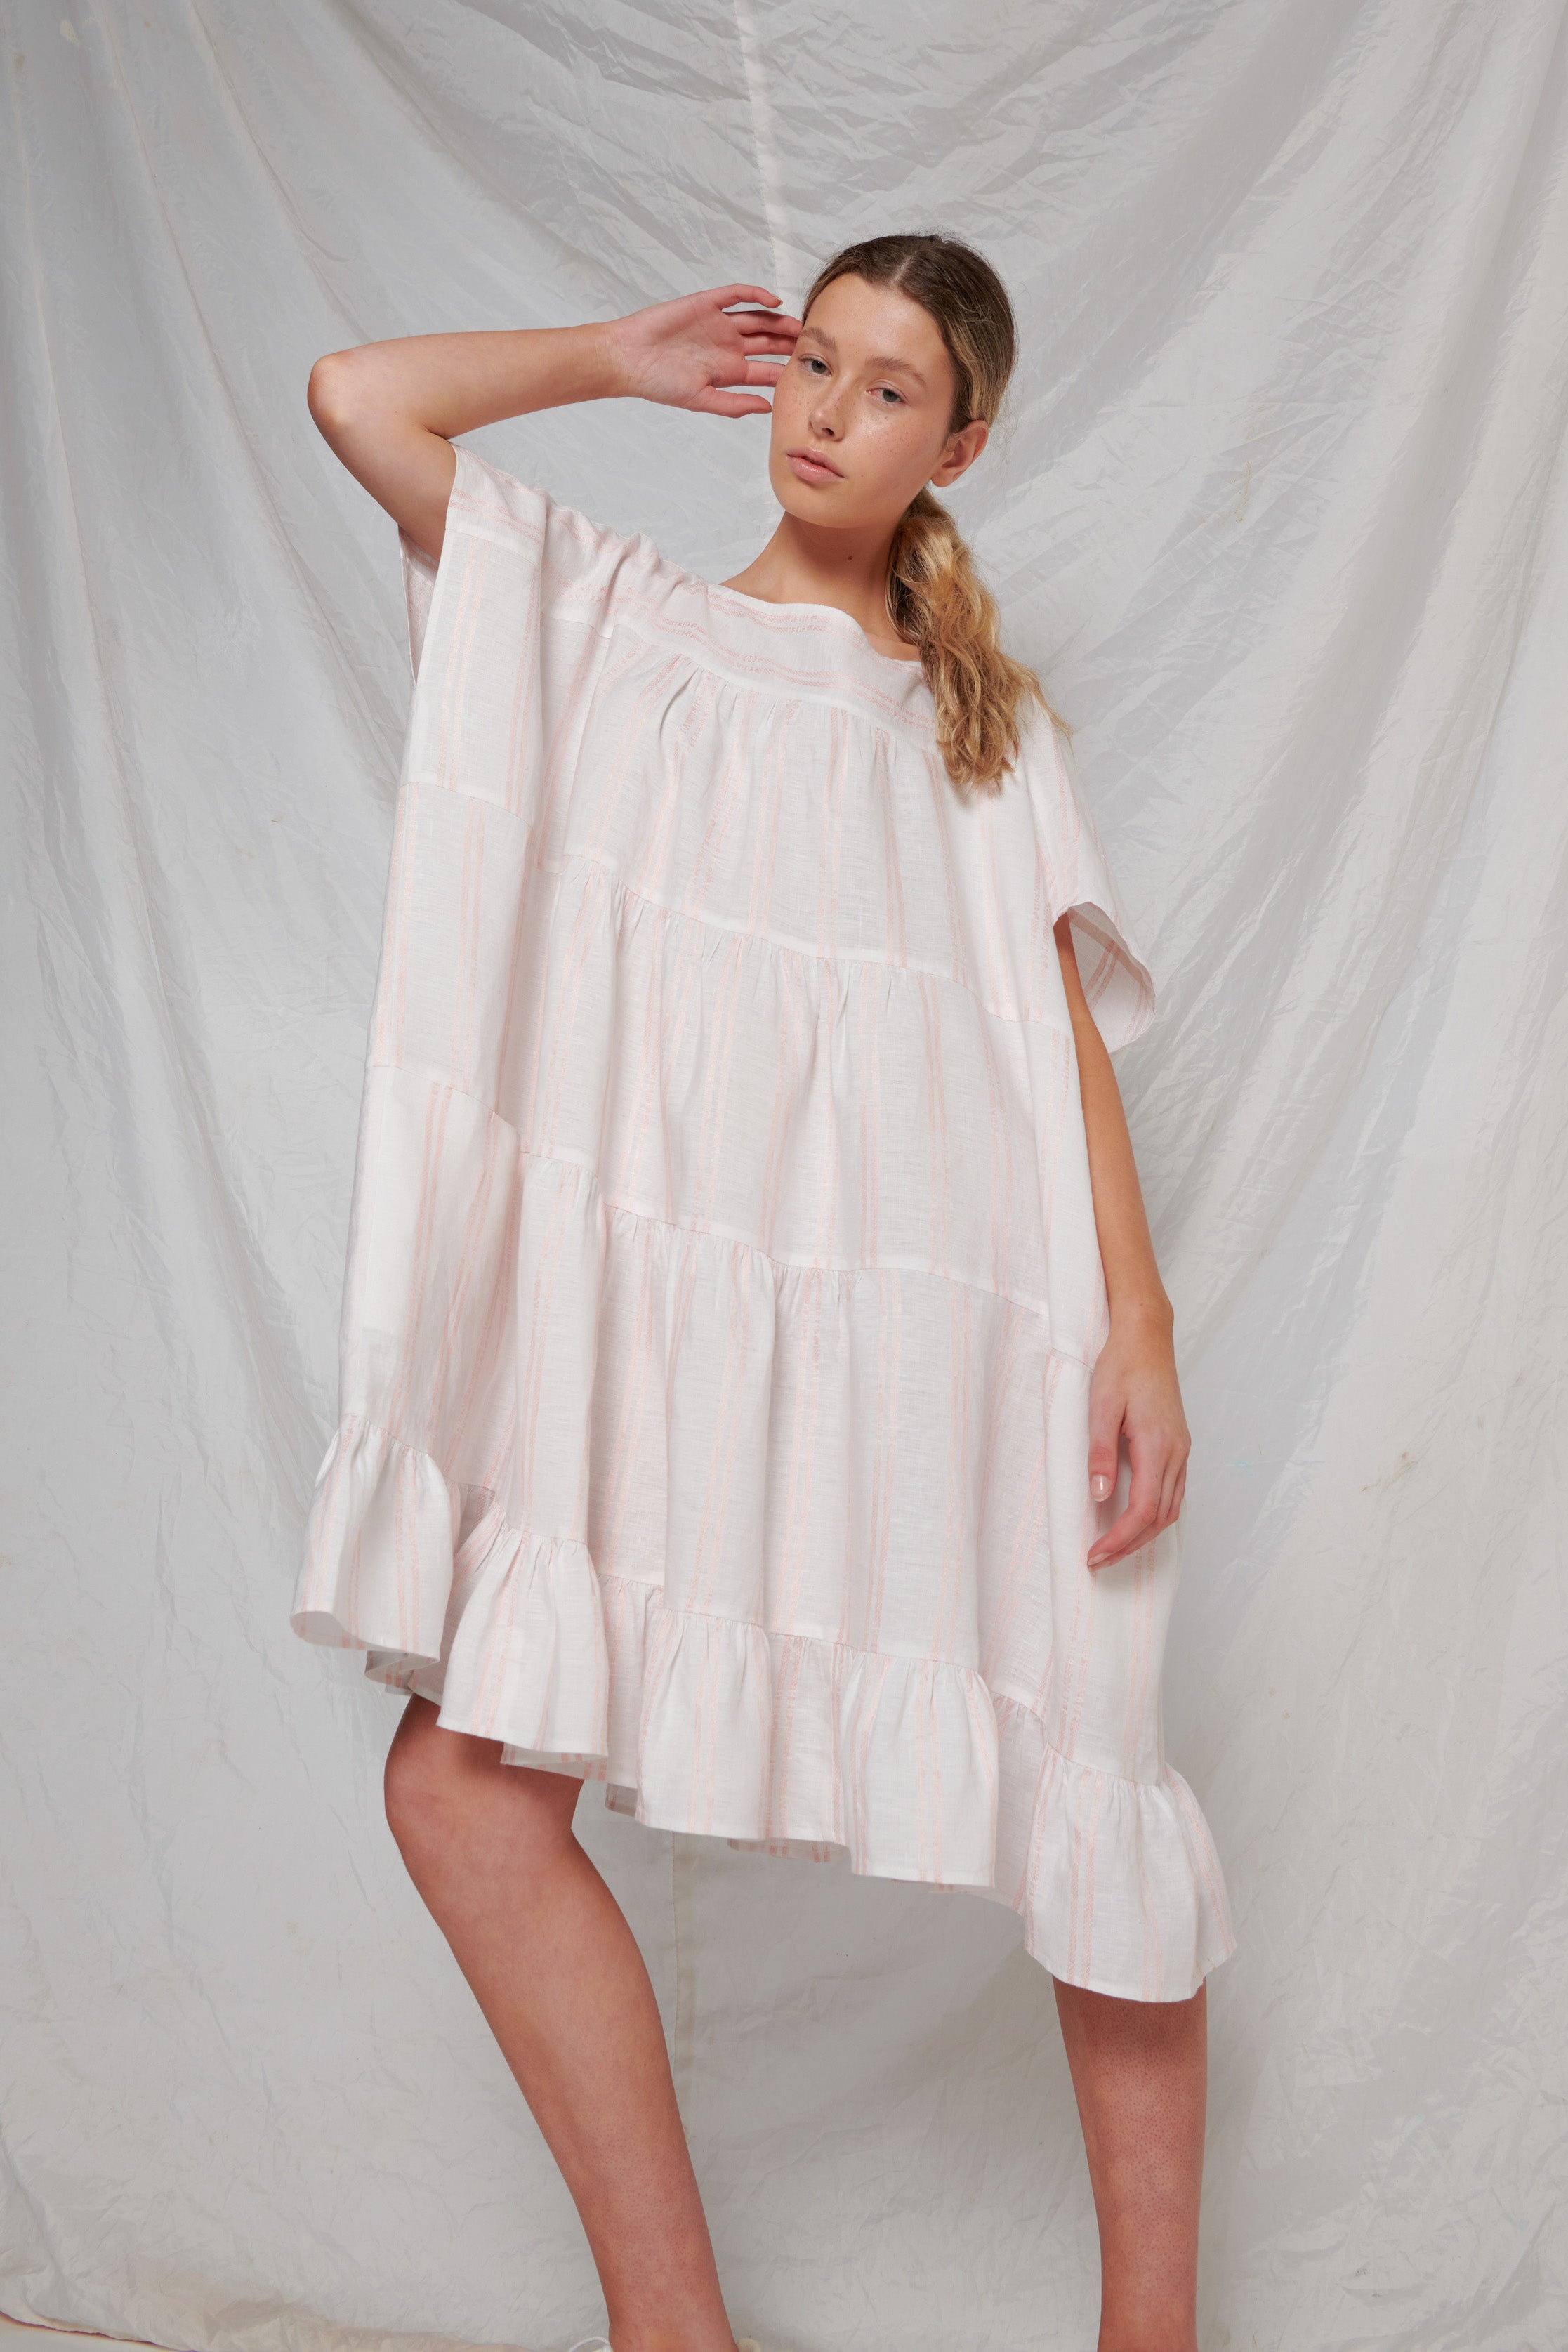 Infinity Dress - White/Petal Stripe